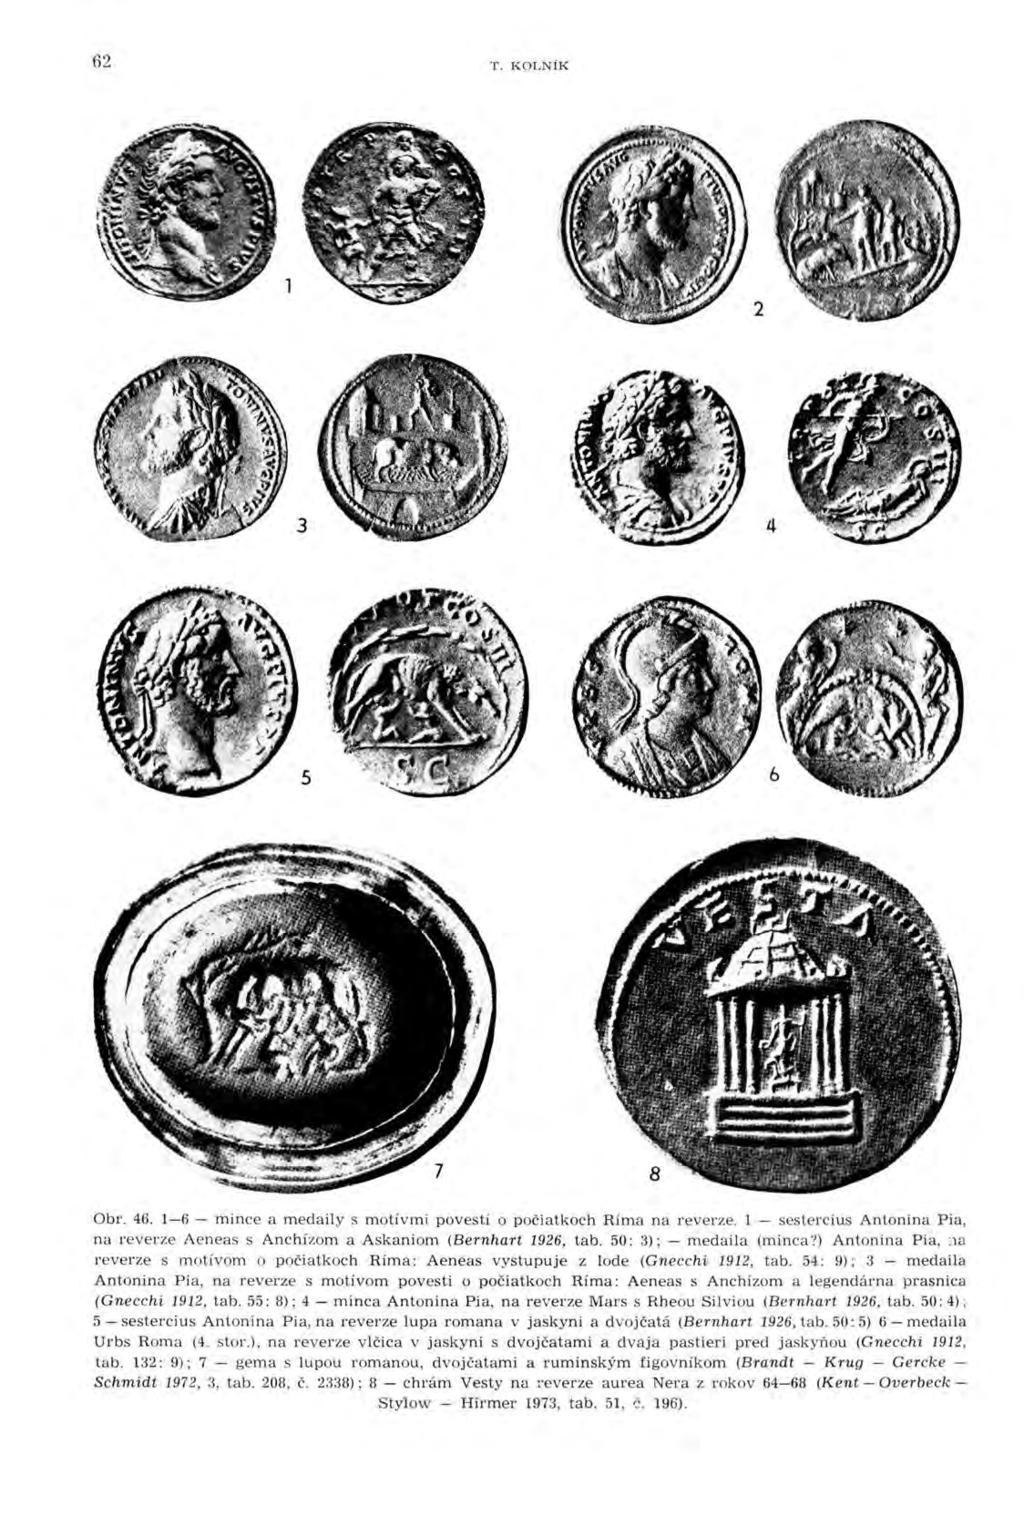 62 T. KOLNÍK 2 3 4 5 Obr. 46. 1-6 - mince a medaily s motívmi povestí o počiatkoch Ríma na reverze. l - sestercius Antonina Pia, na reverze Aeneas s Anchízom a Askaniom (Bernhart 1926, tab.